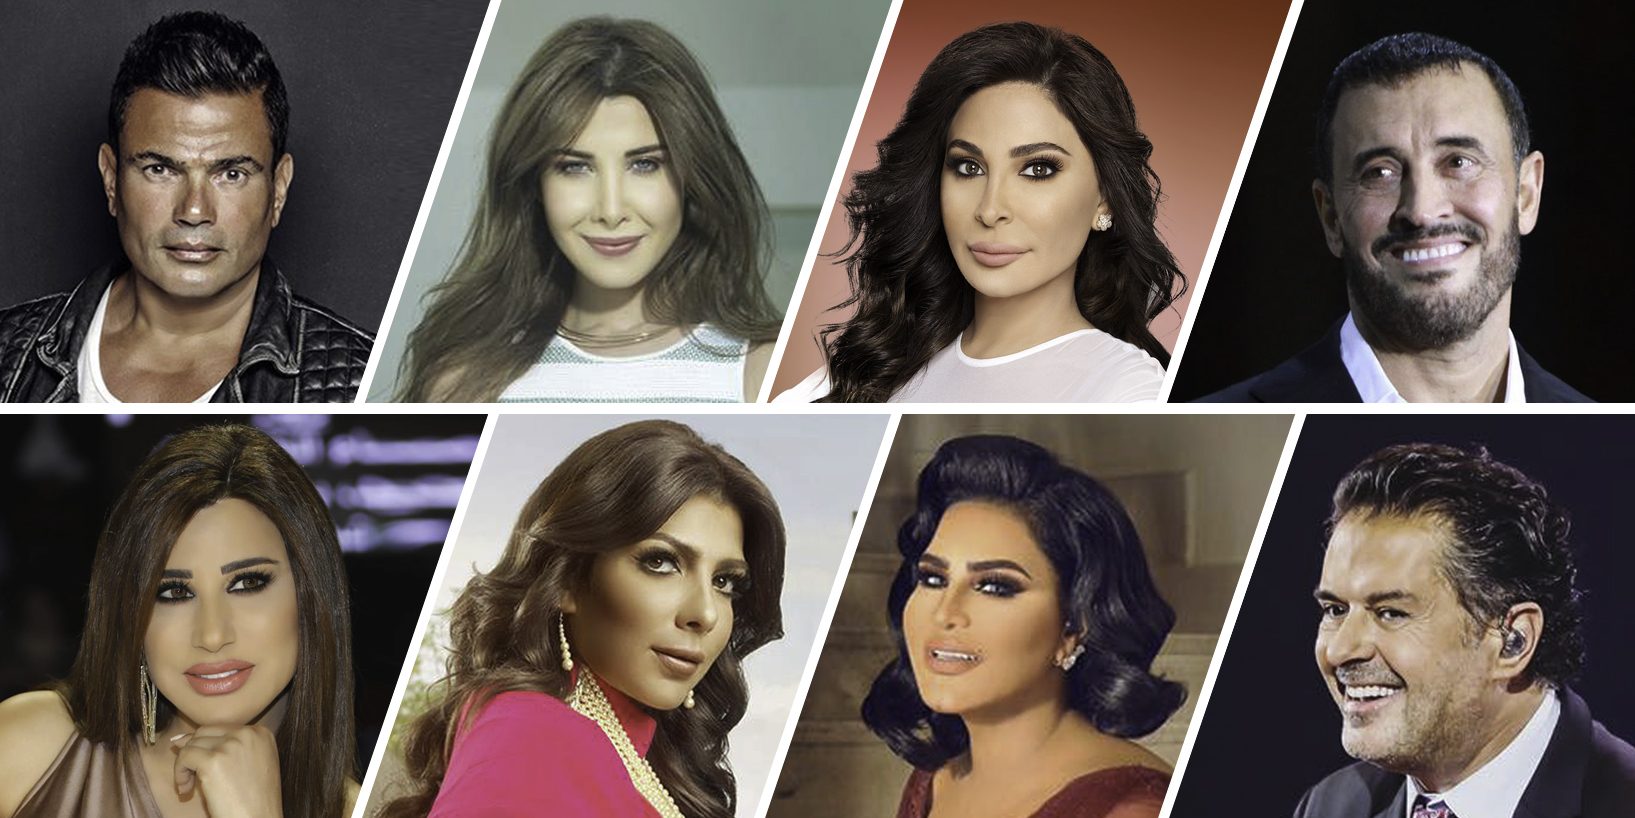 The Top 10 Arab Singers